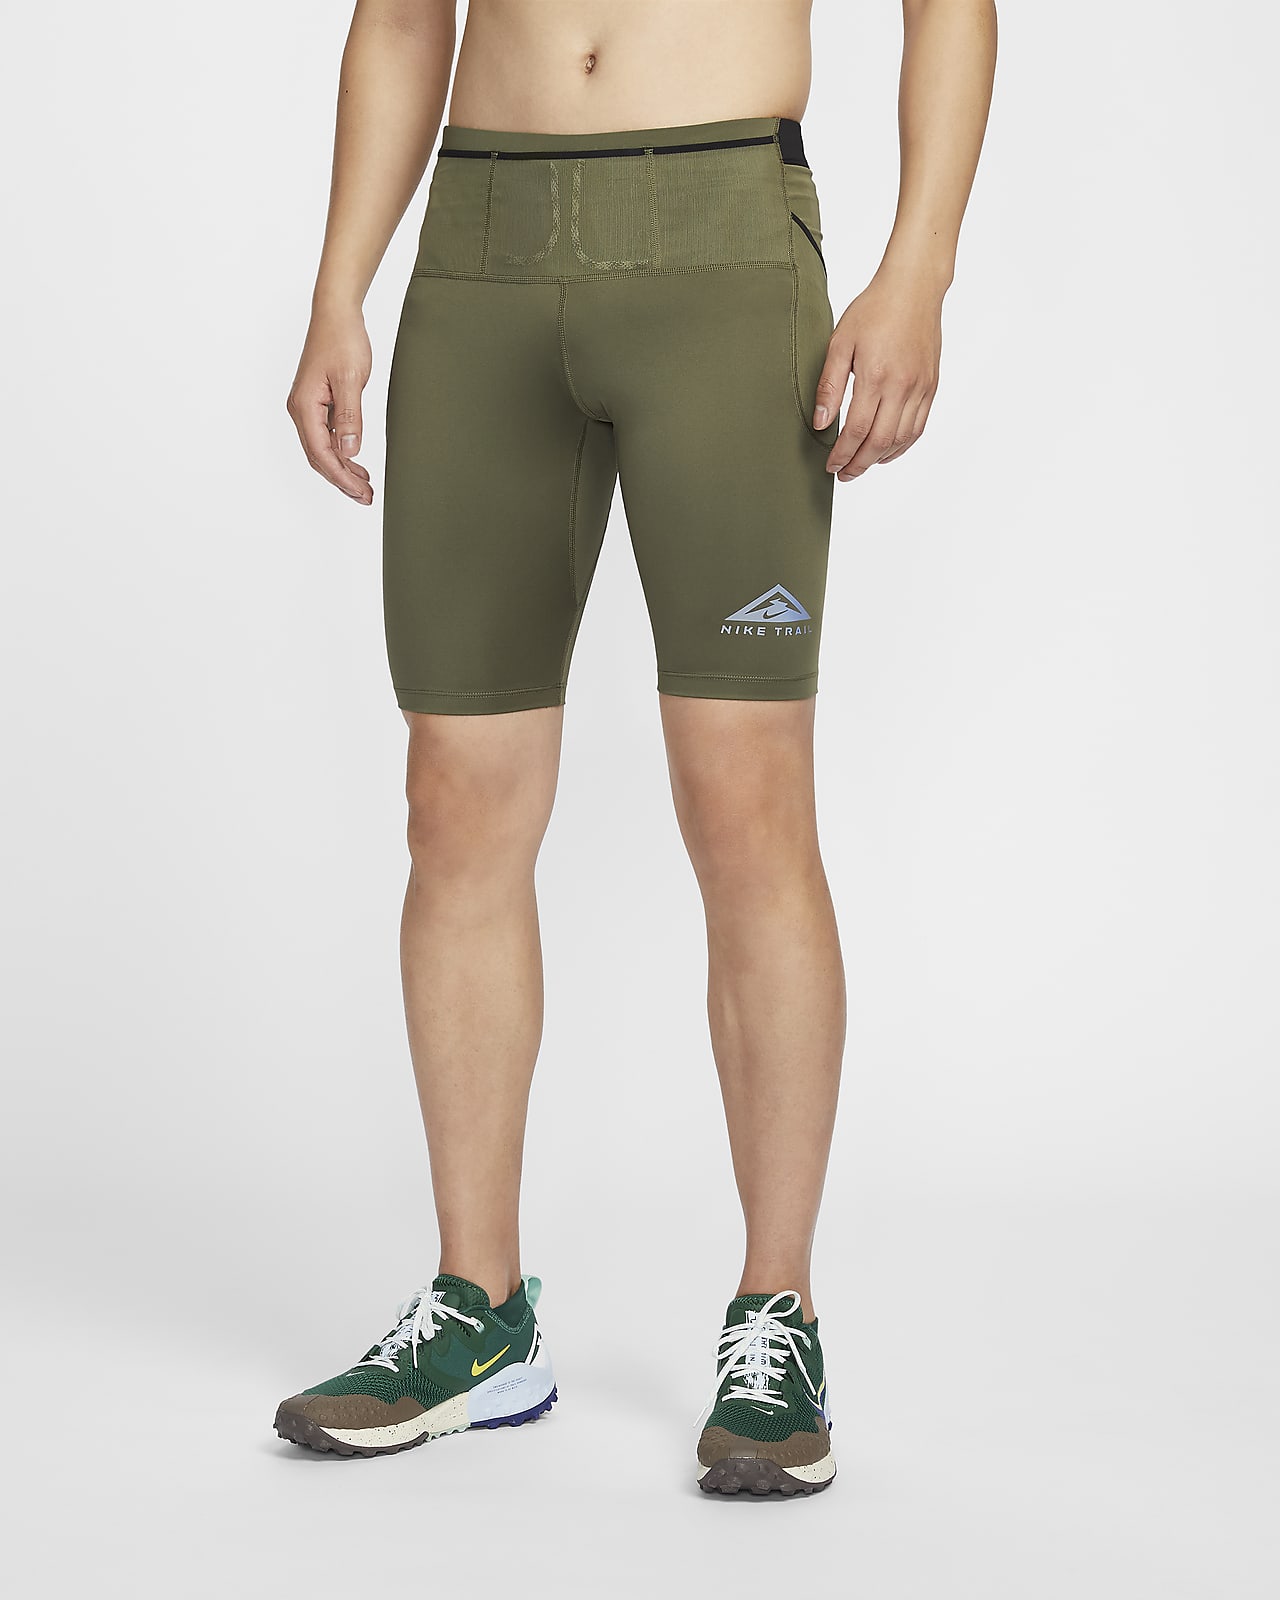 Nike Trail Dri-FIT Lava Loops 男子速干越野跑步紧身短裤